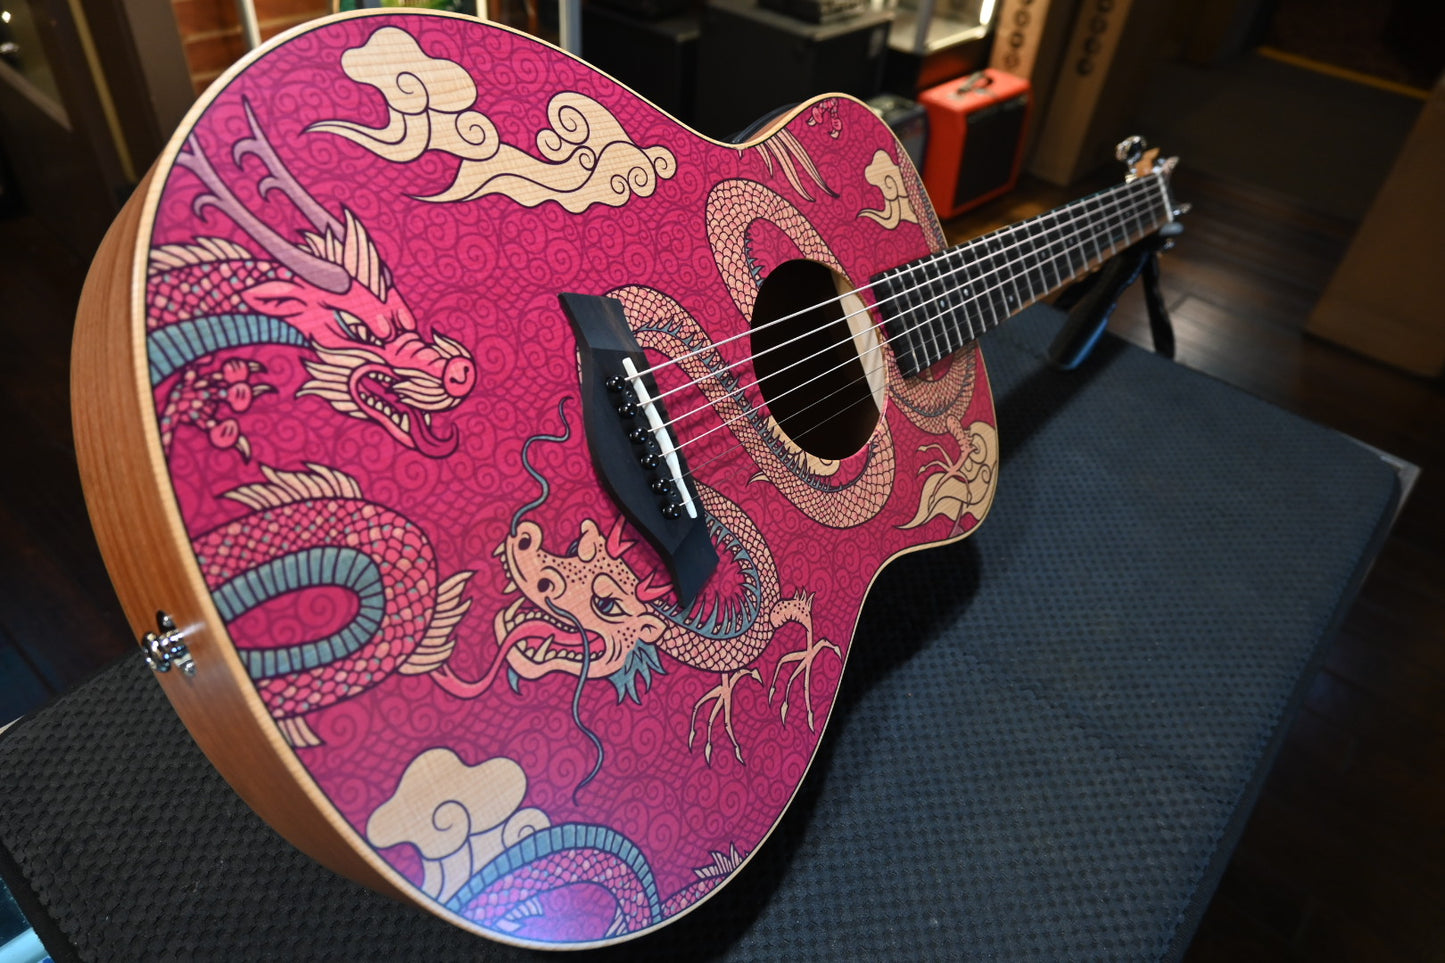 Taylor GS Mini-e Special Edition Dragon Guitar #4252